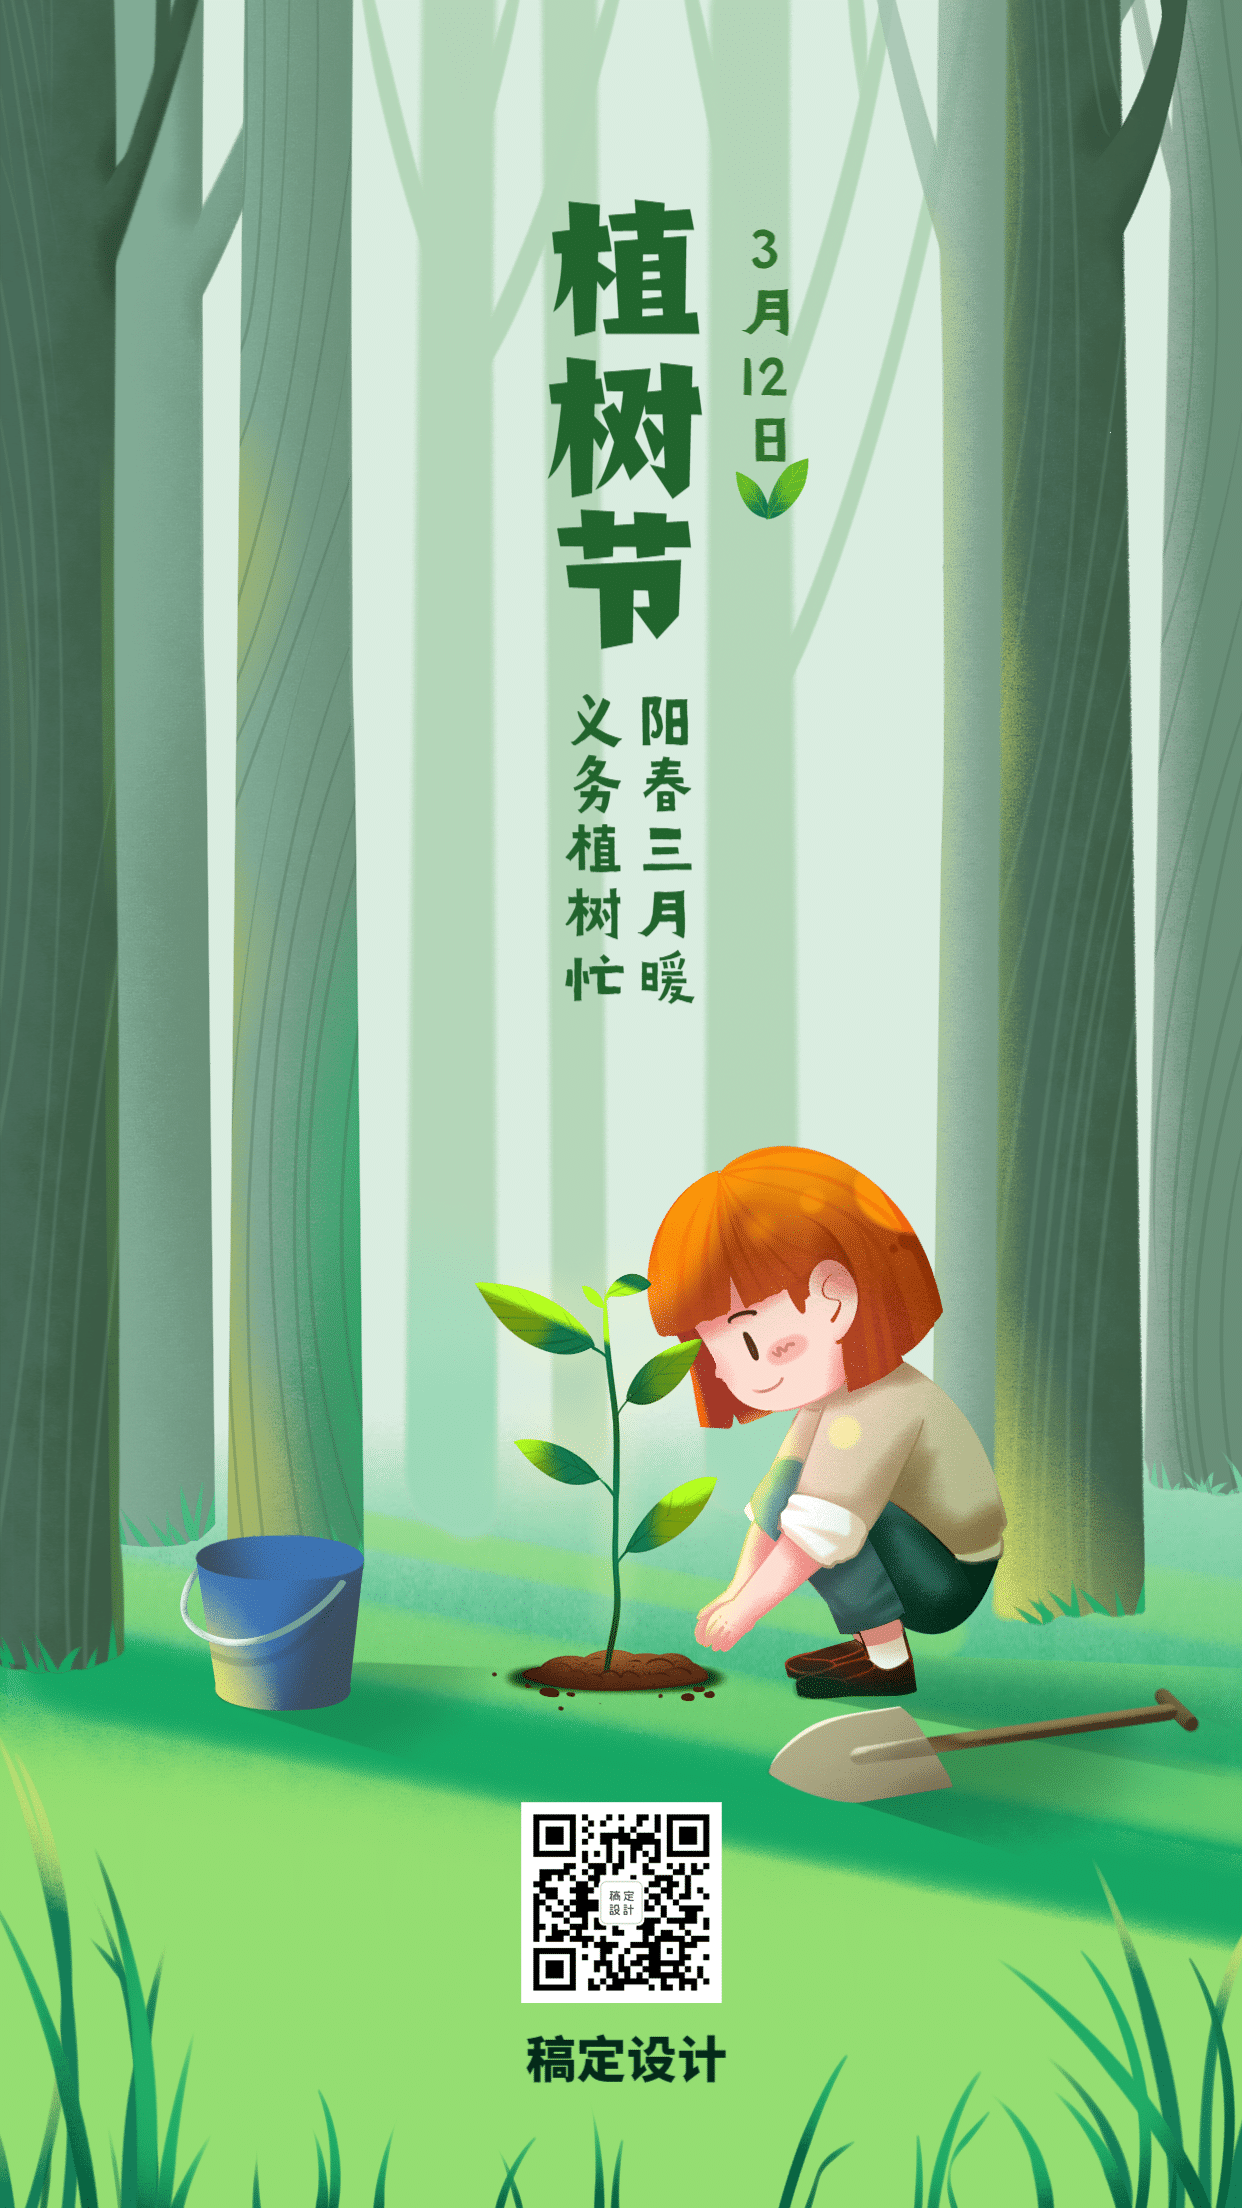 植树节种树环保倡议插画手机海报